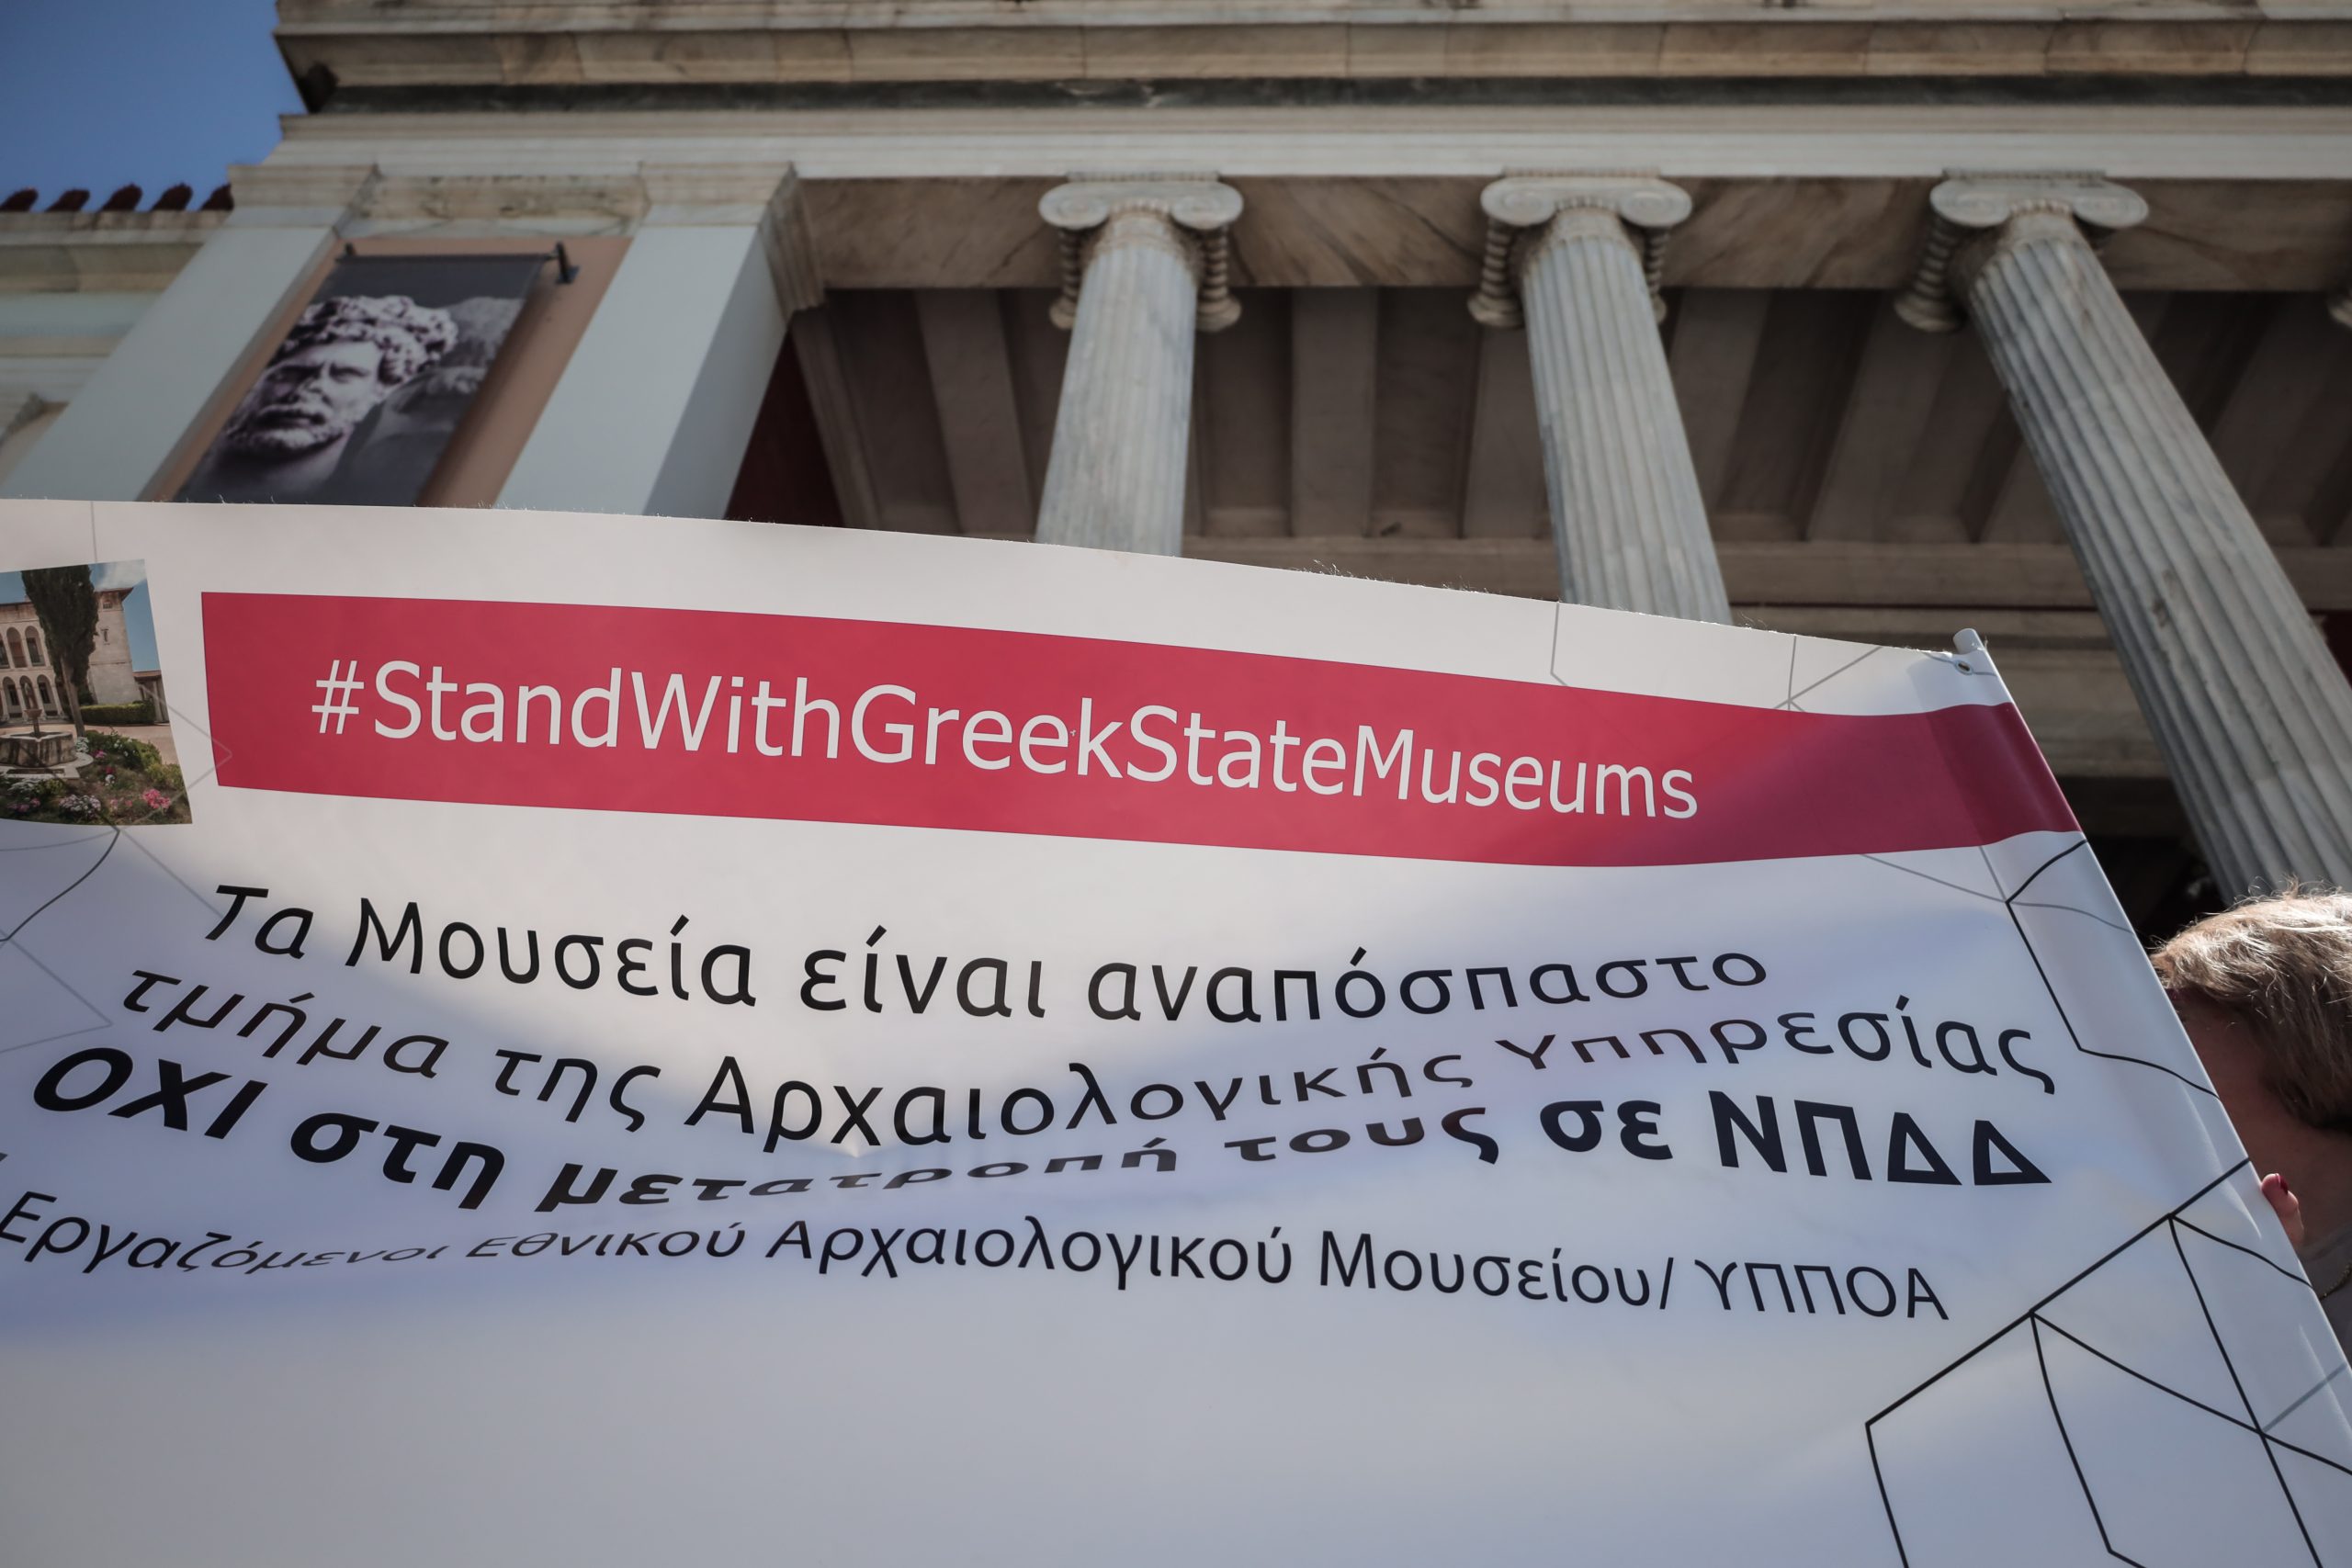 Αρχαιολόγοι: “Η πολιτική ηγεσία θέλει να μετατρέψει τα μουσεία σε κυβερνητικά καταστήματα”